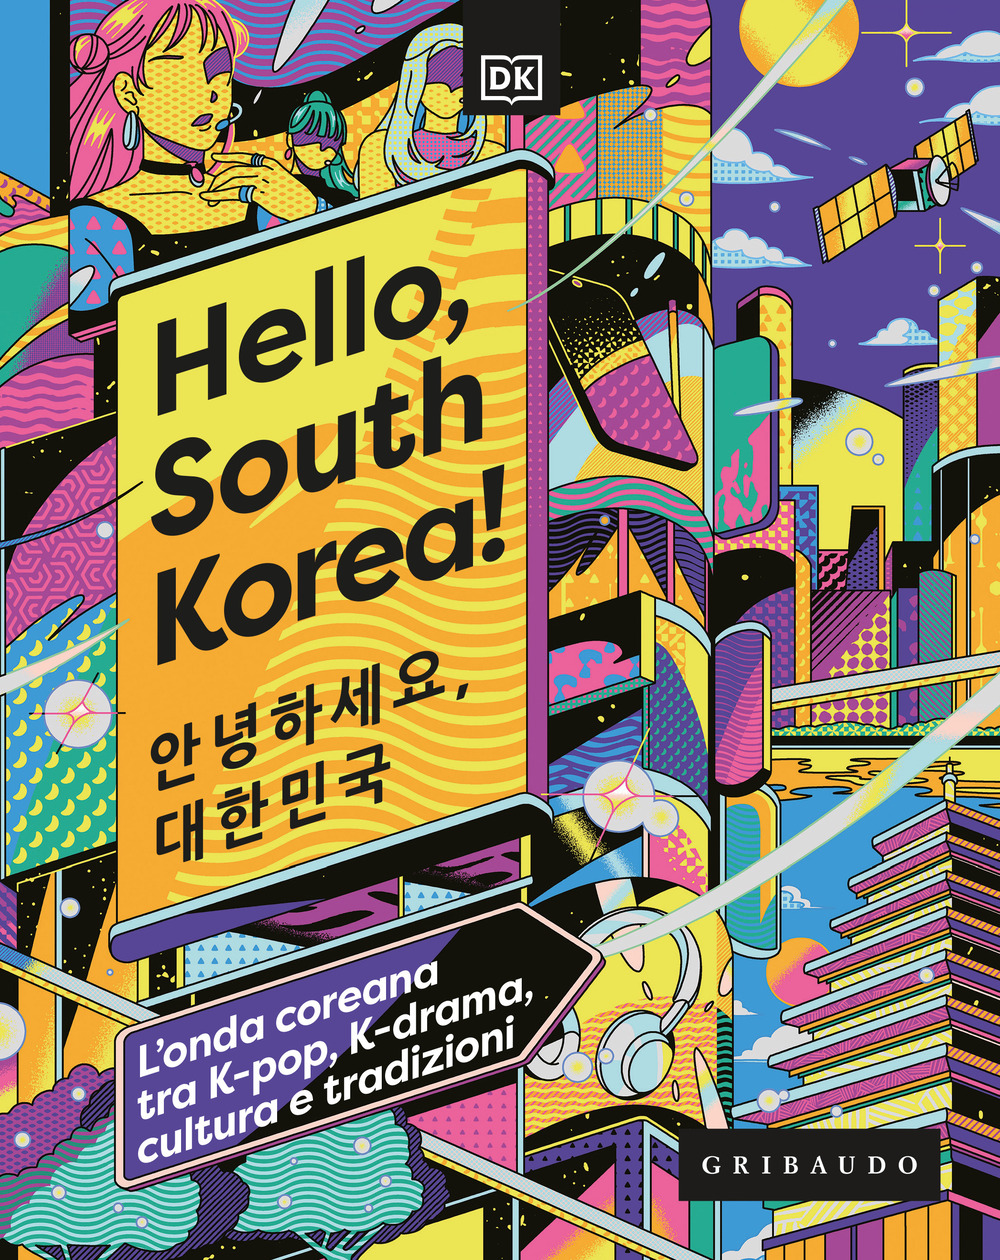 Hello, South Korea! L'onda coreana tra K-pop, K-drama, cultura e tradizioni